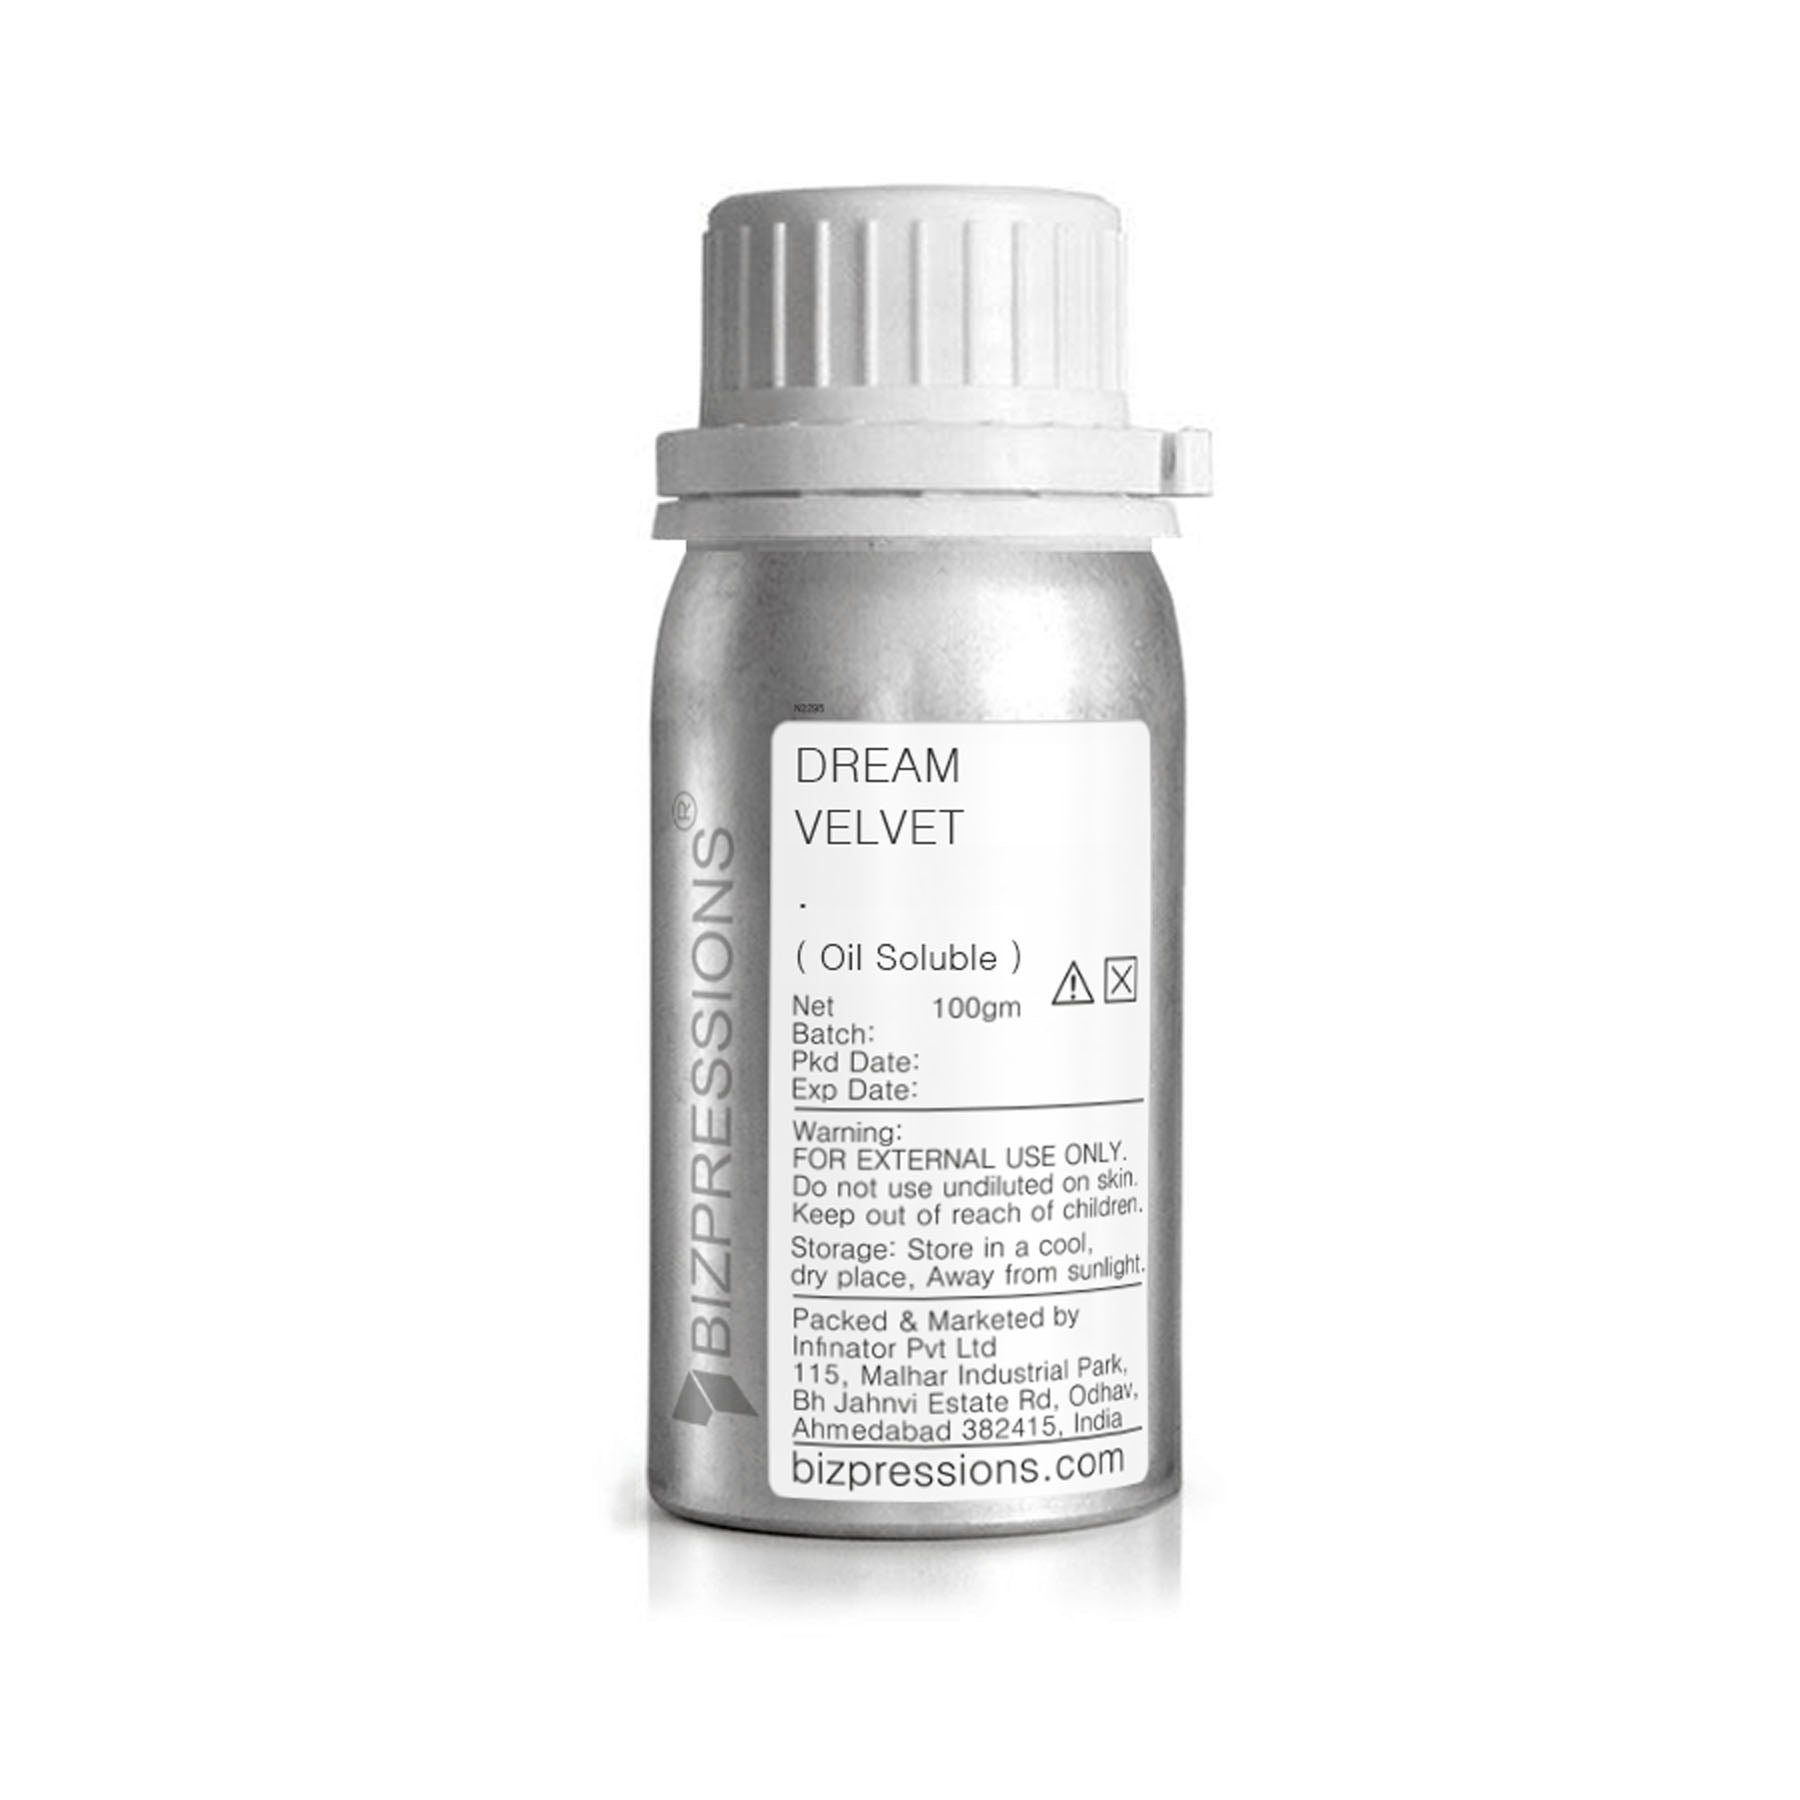 DREAM VELVET - Fragrance ( Oil Soluble ) - 100 gm